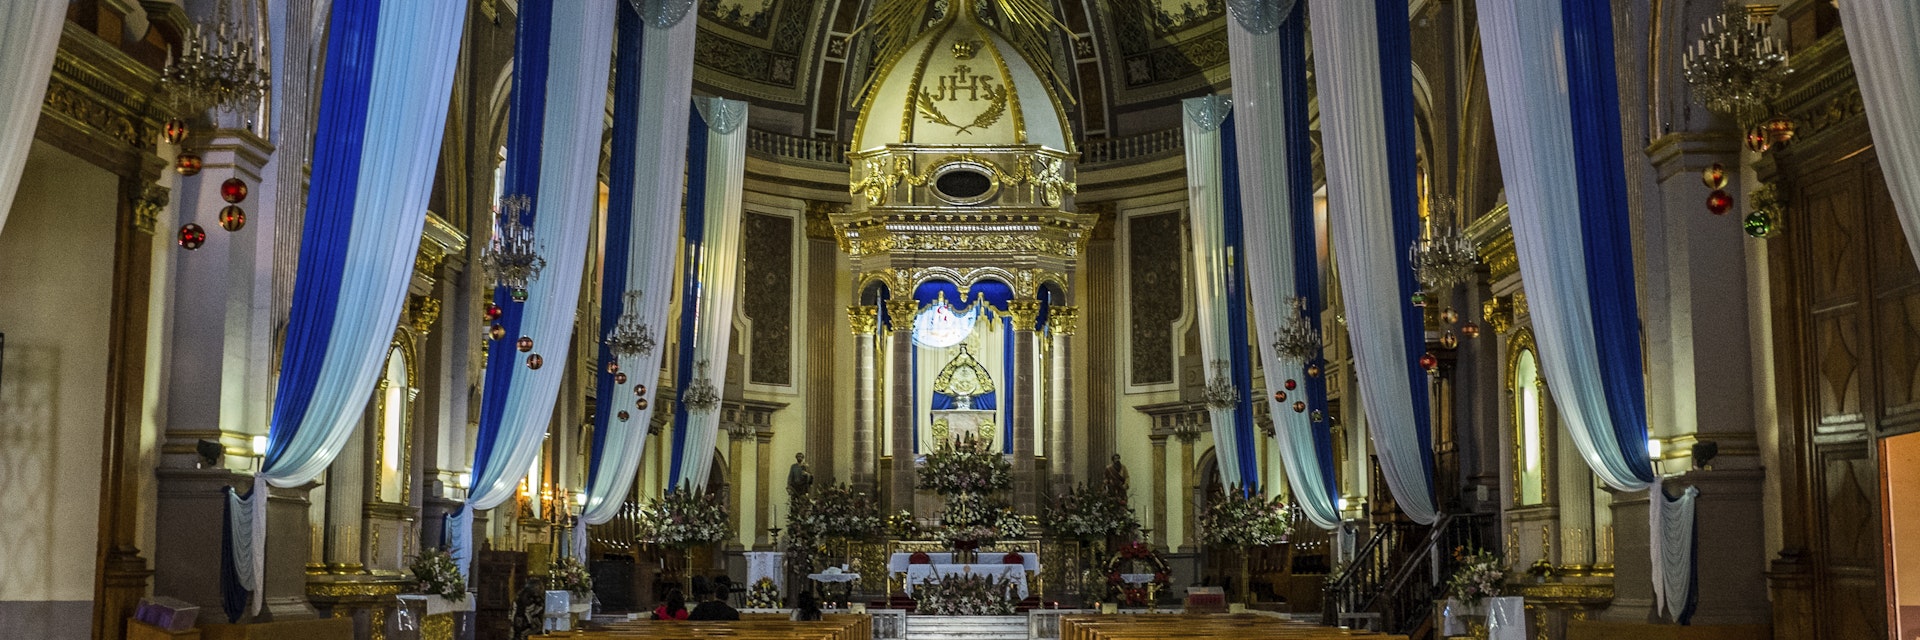 Patzcuaro's Basilica Church in Mexico interior